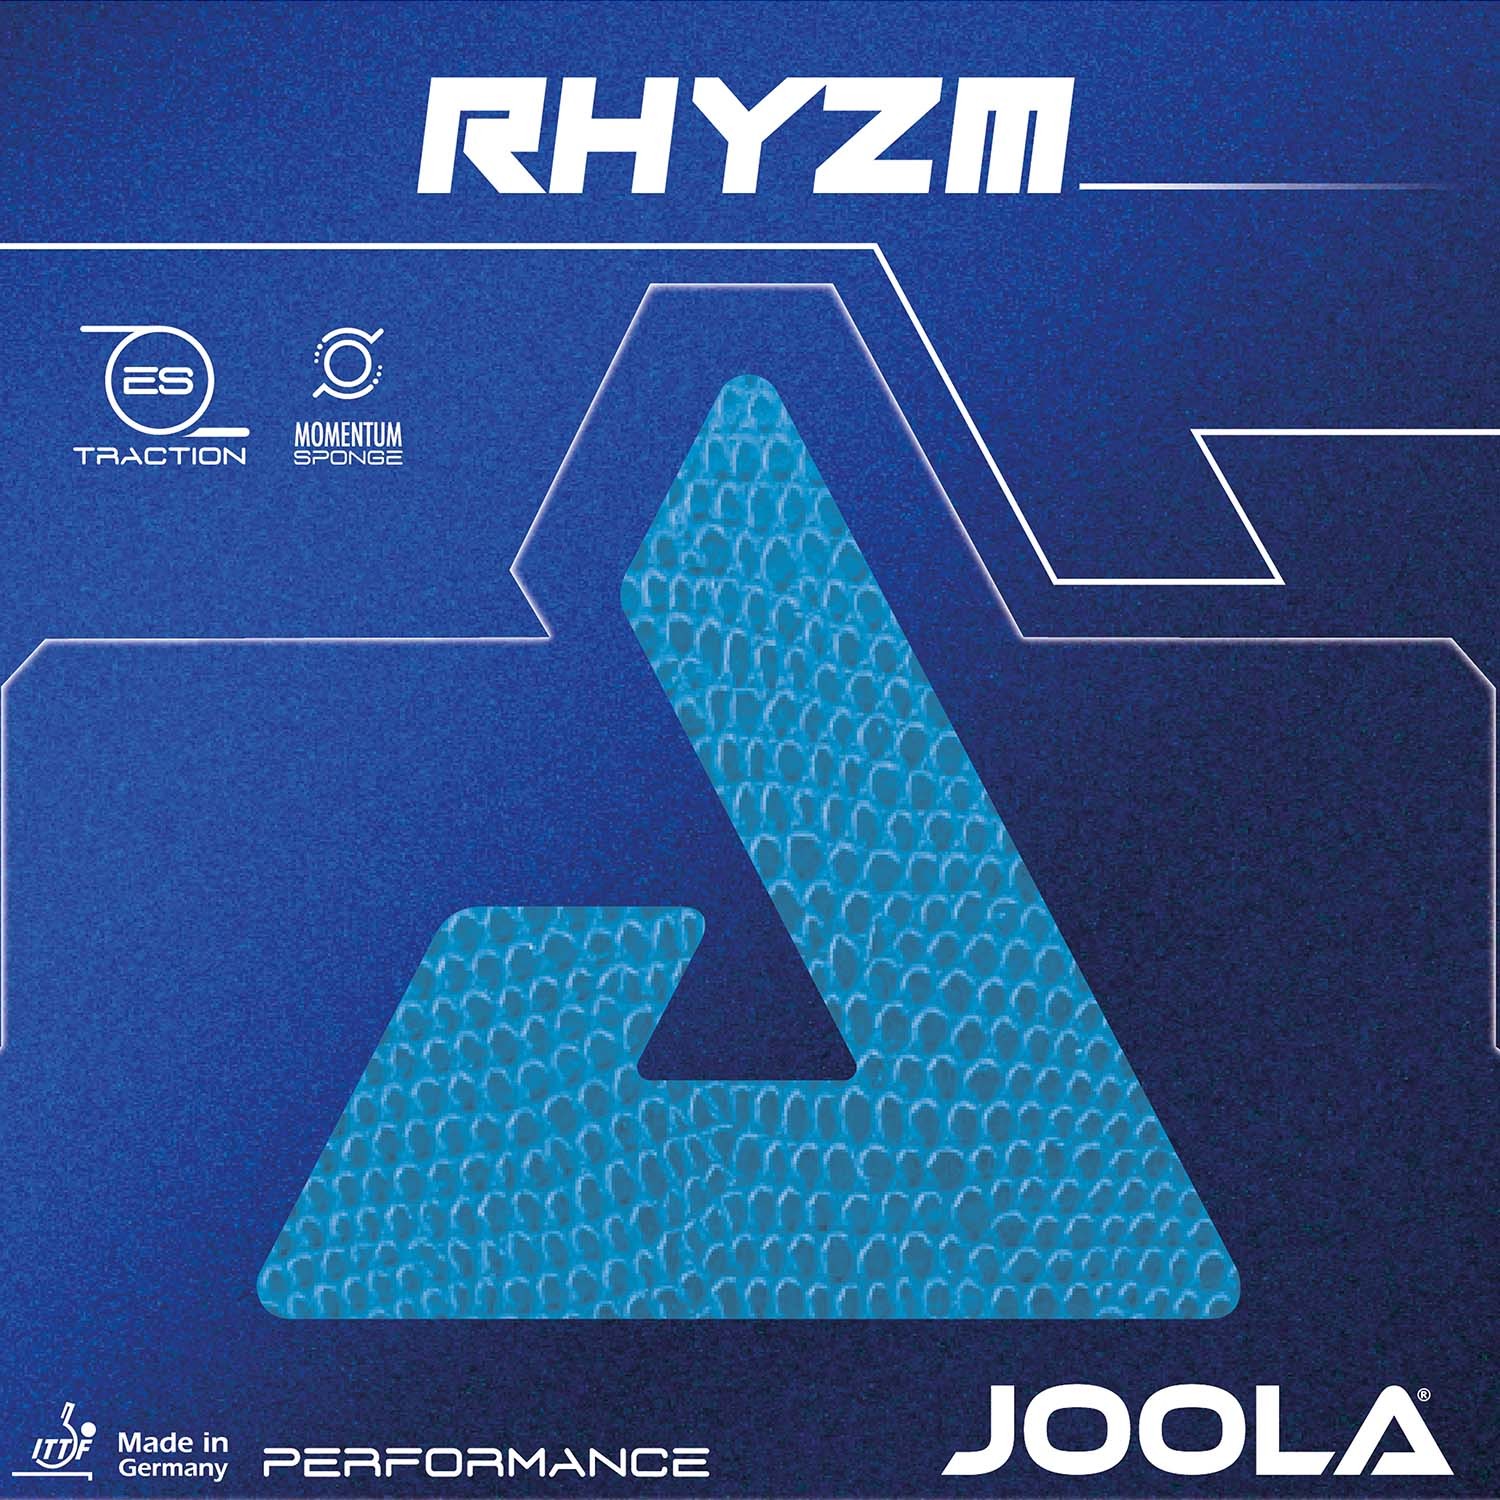 Tischtennisbelag Joola Rhyzm-Tech DOPPELPACK zum Sonderpreis 